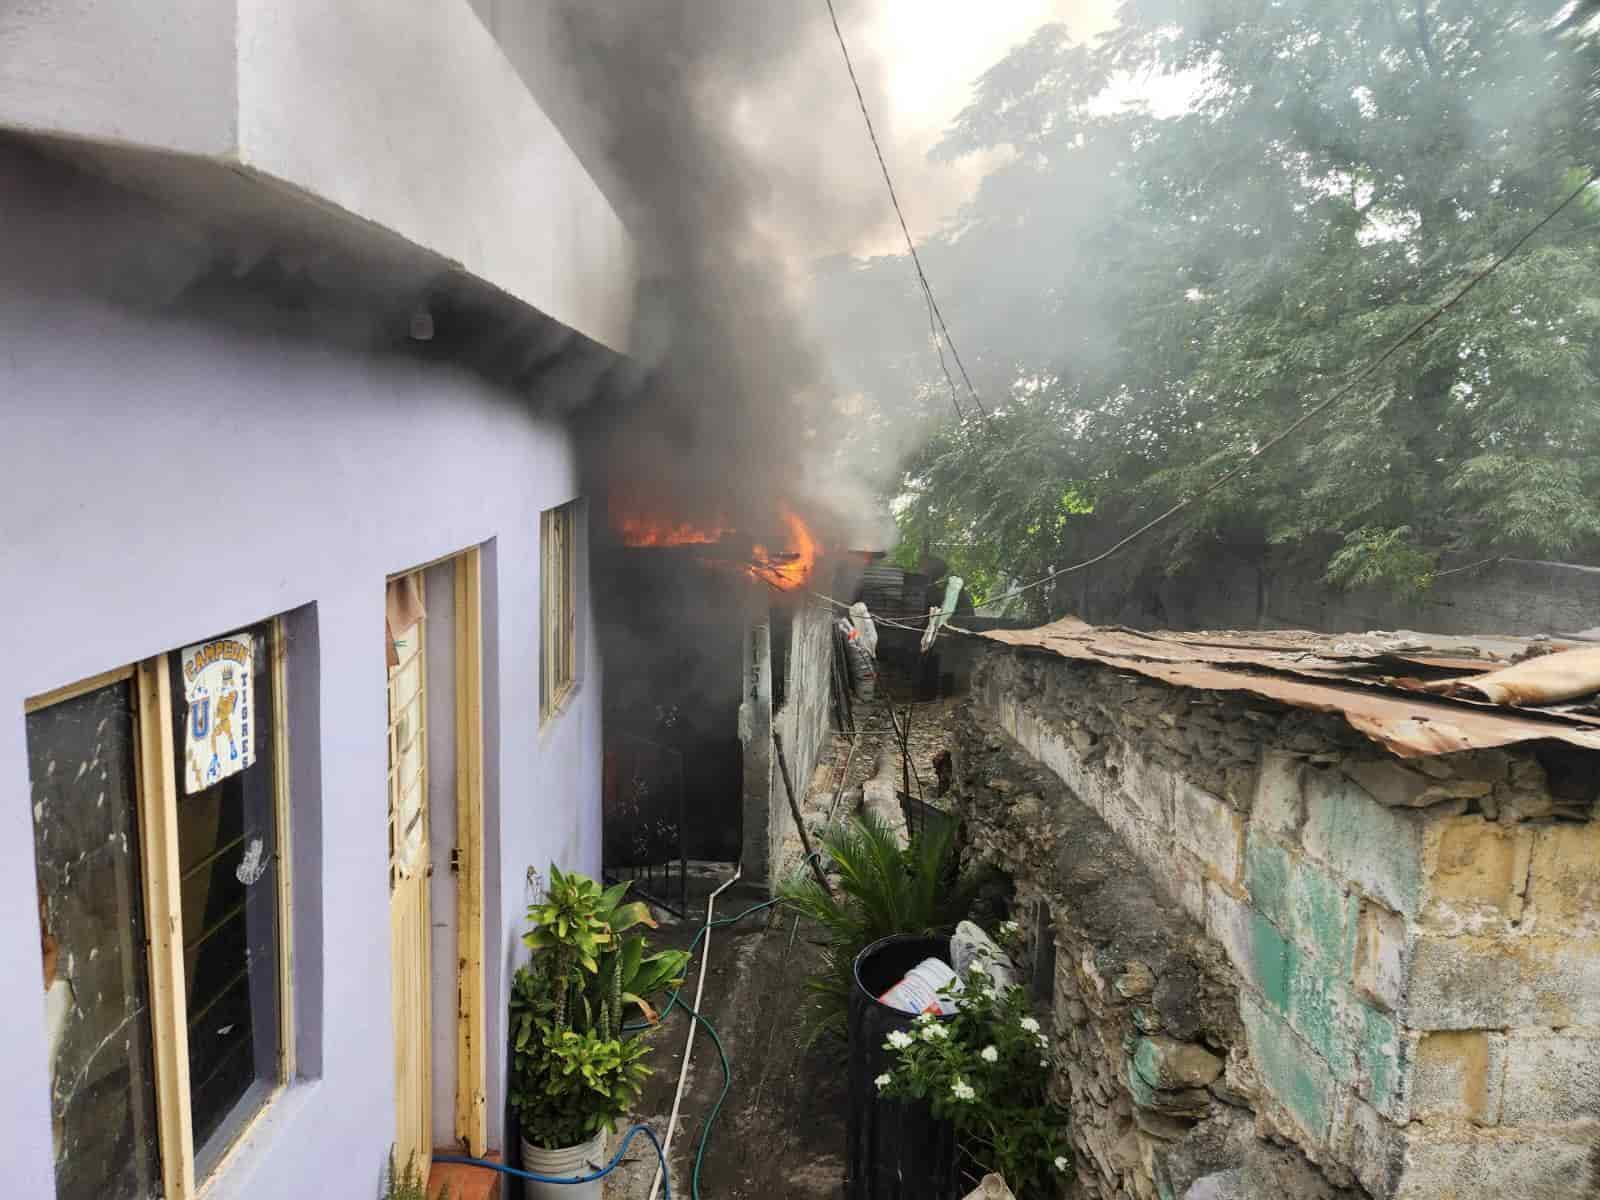 El incendio de un domicilio movilizó ayer a elementos de Bomberos de Nuevo León y Protección Civil, en la Colonia Independencia, al sur del municipio de Monterrey, donde se evacuaron al menos siete personas de viviendas aledañas.